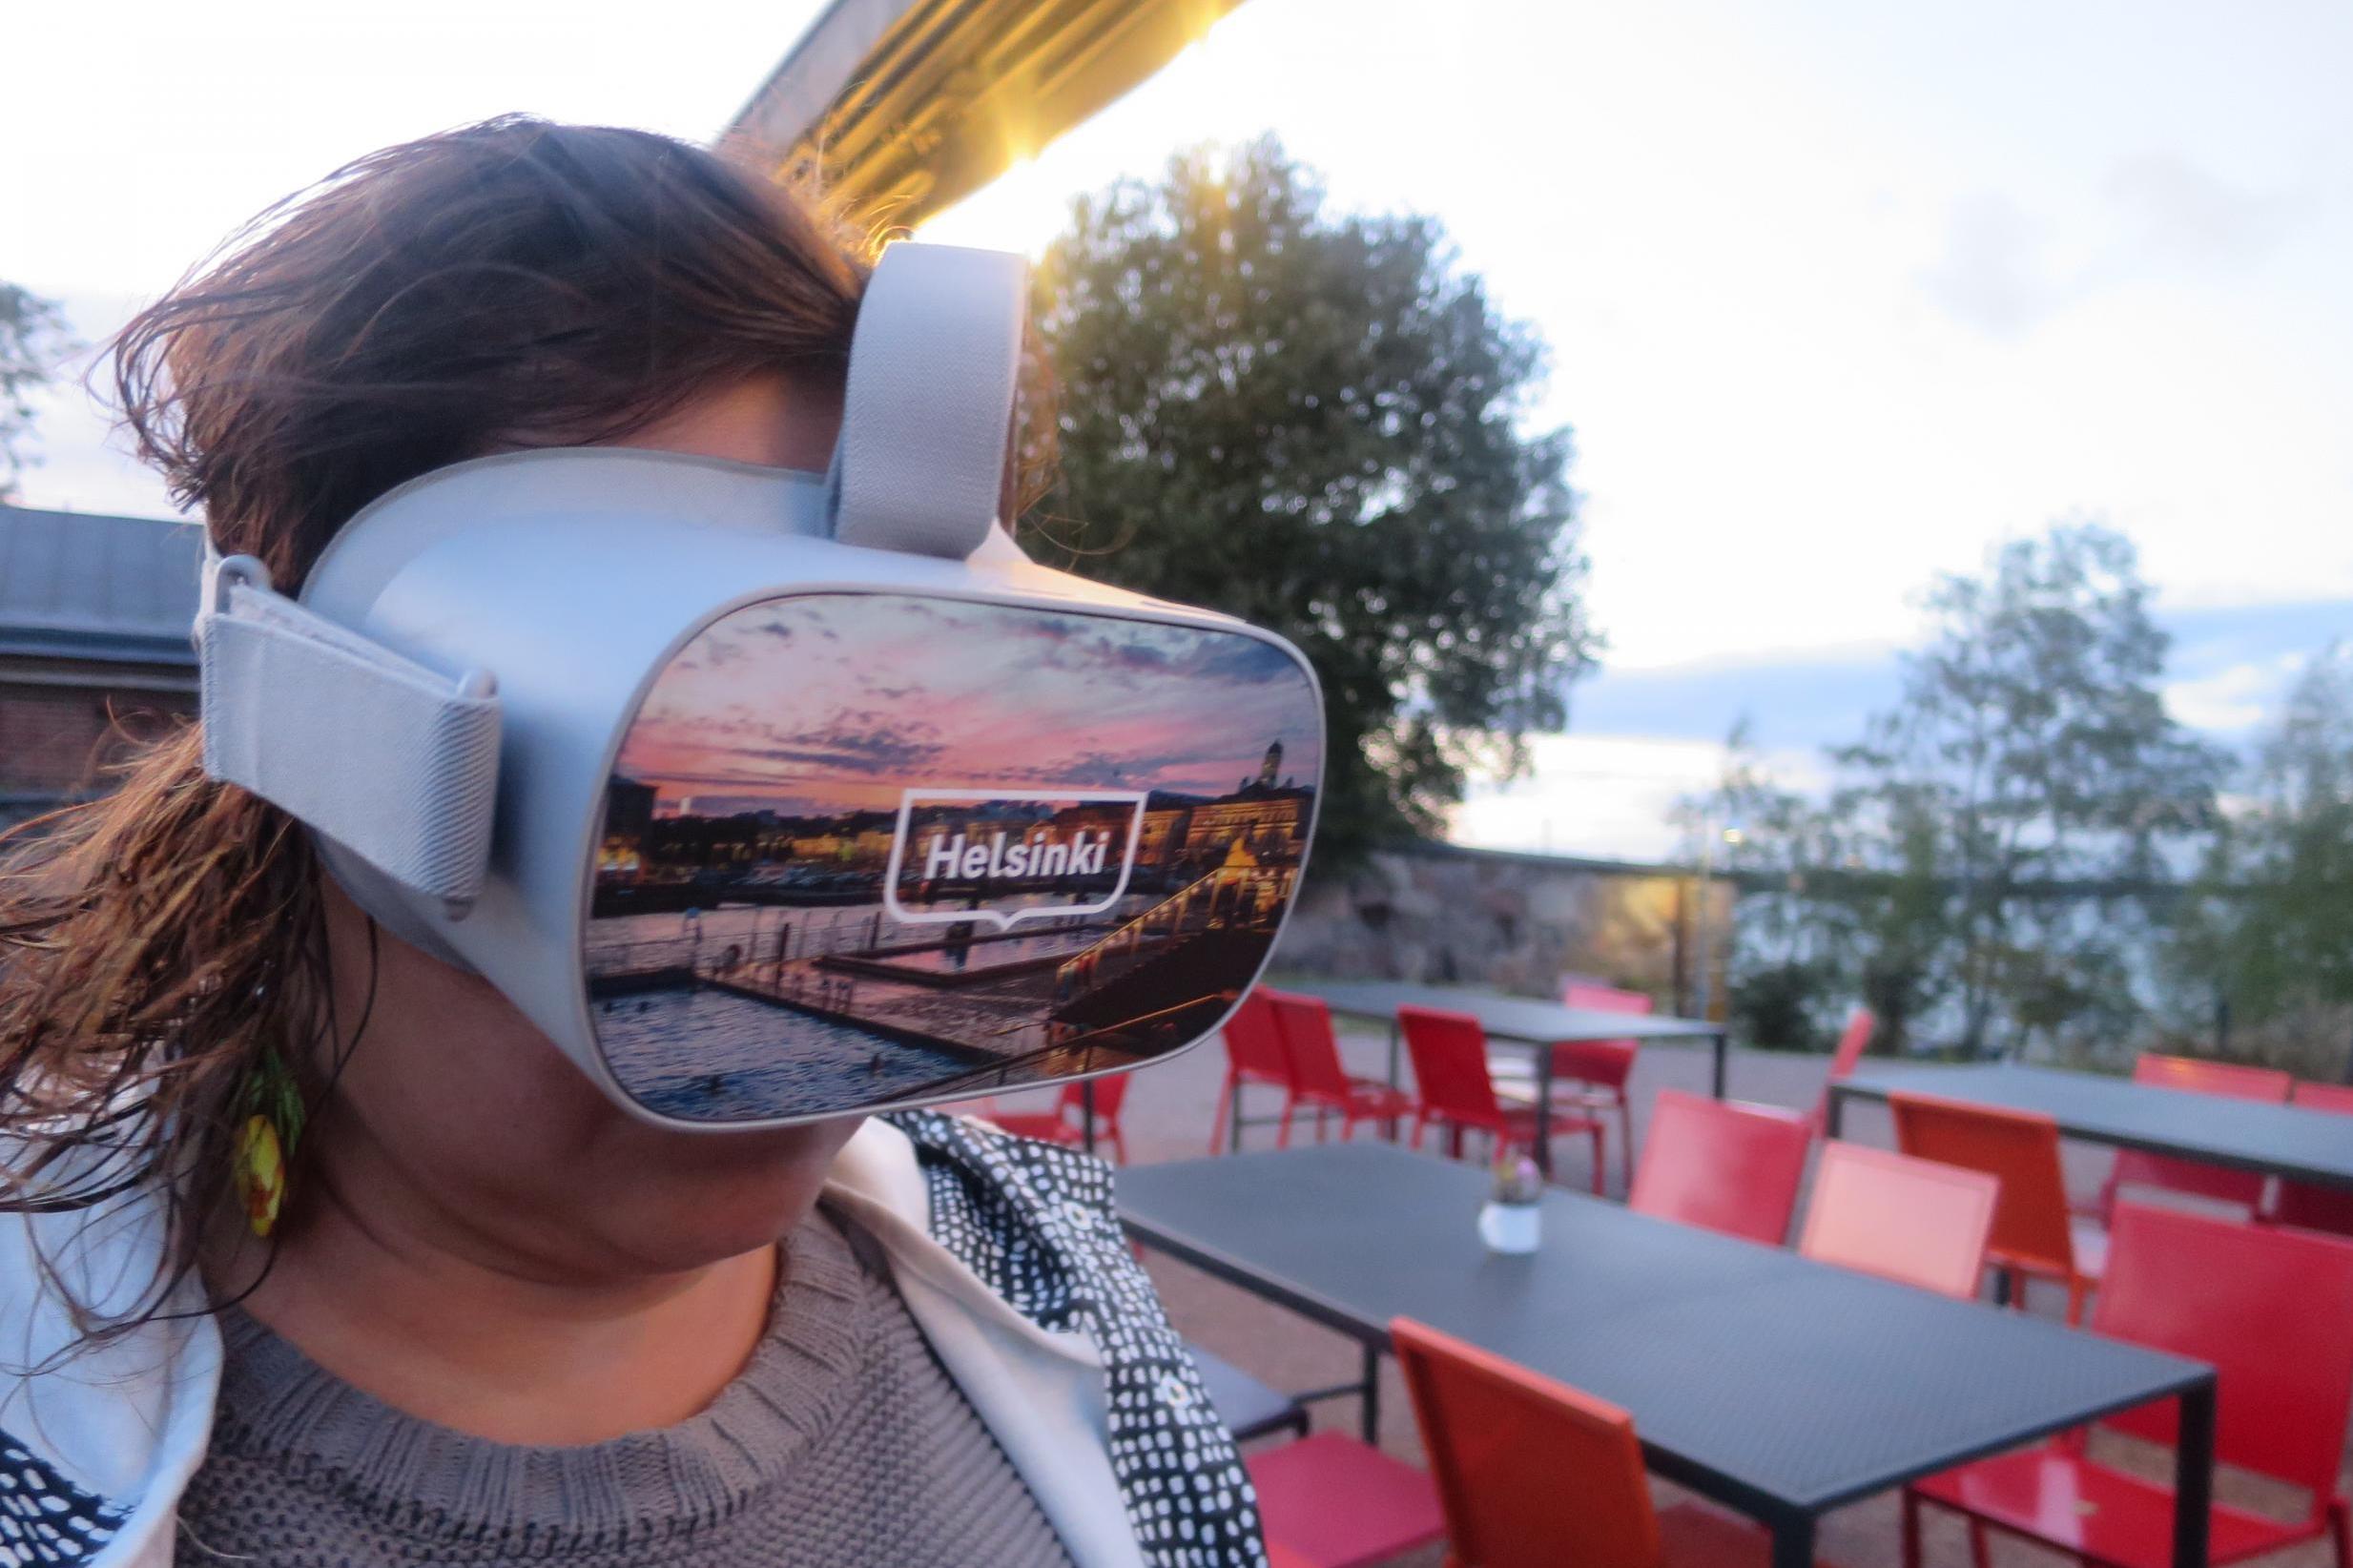 Experience Helsinki via VR